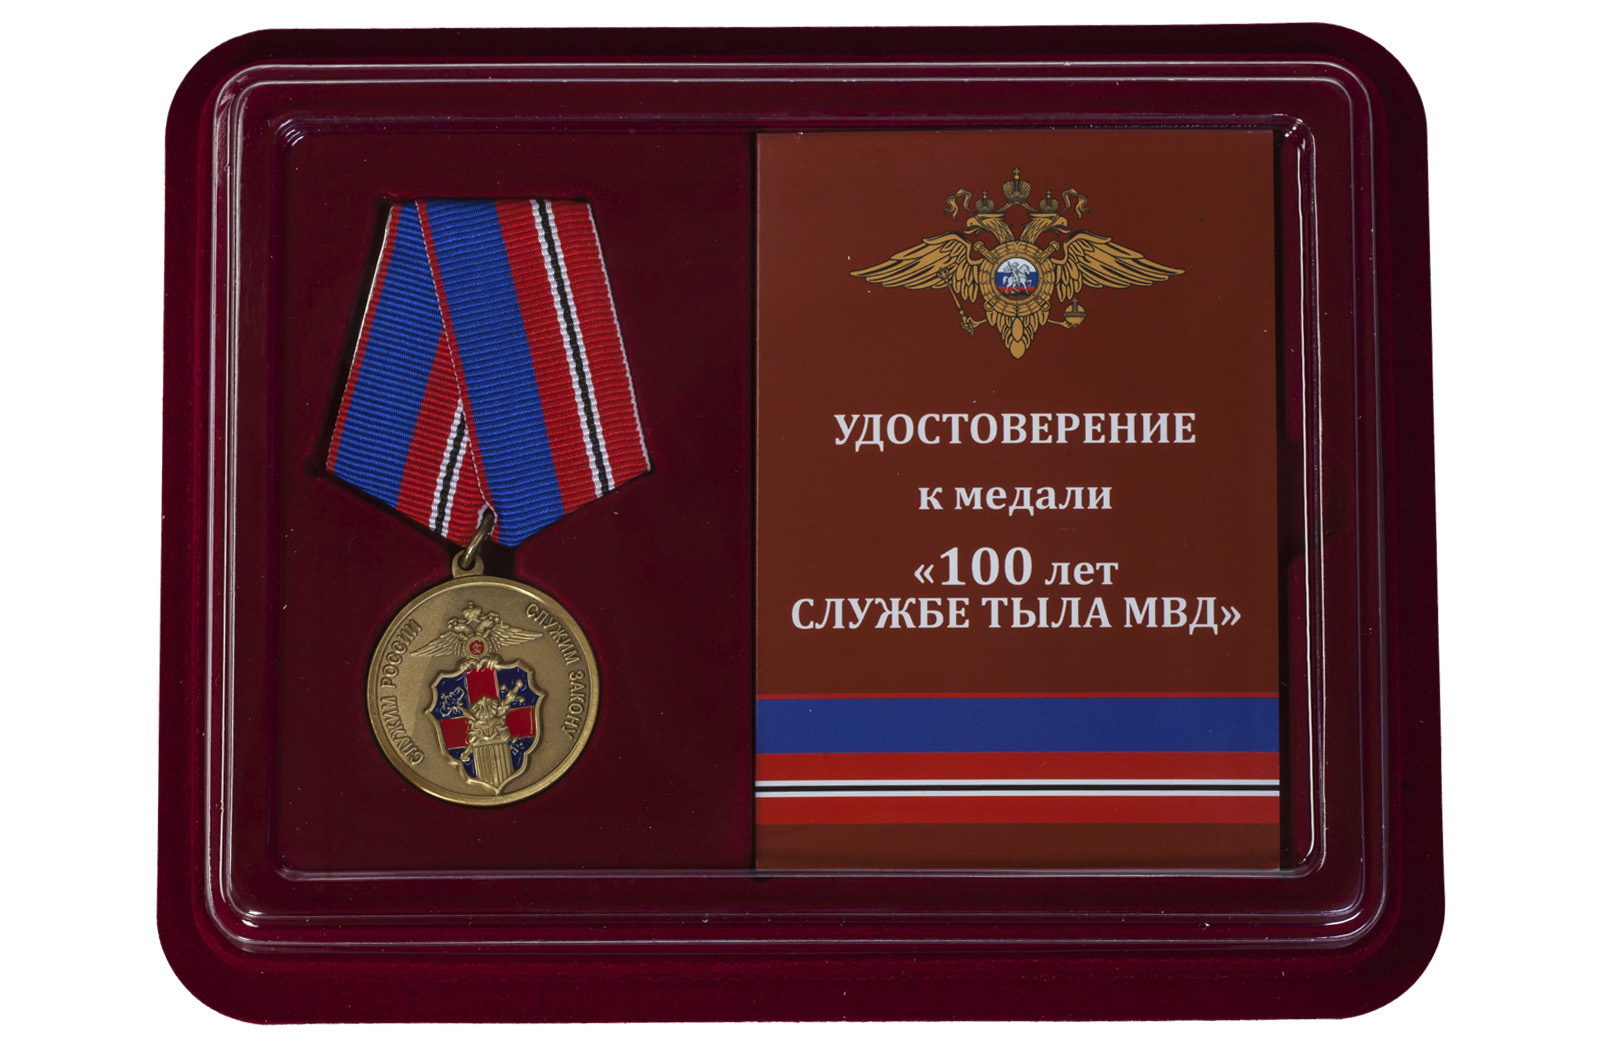 Купить медаль Служба Тыла МВД России по экономичной цене